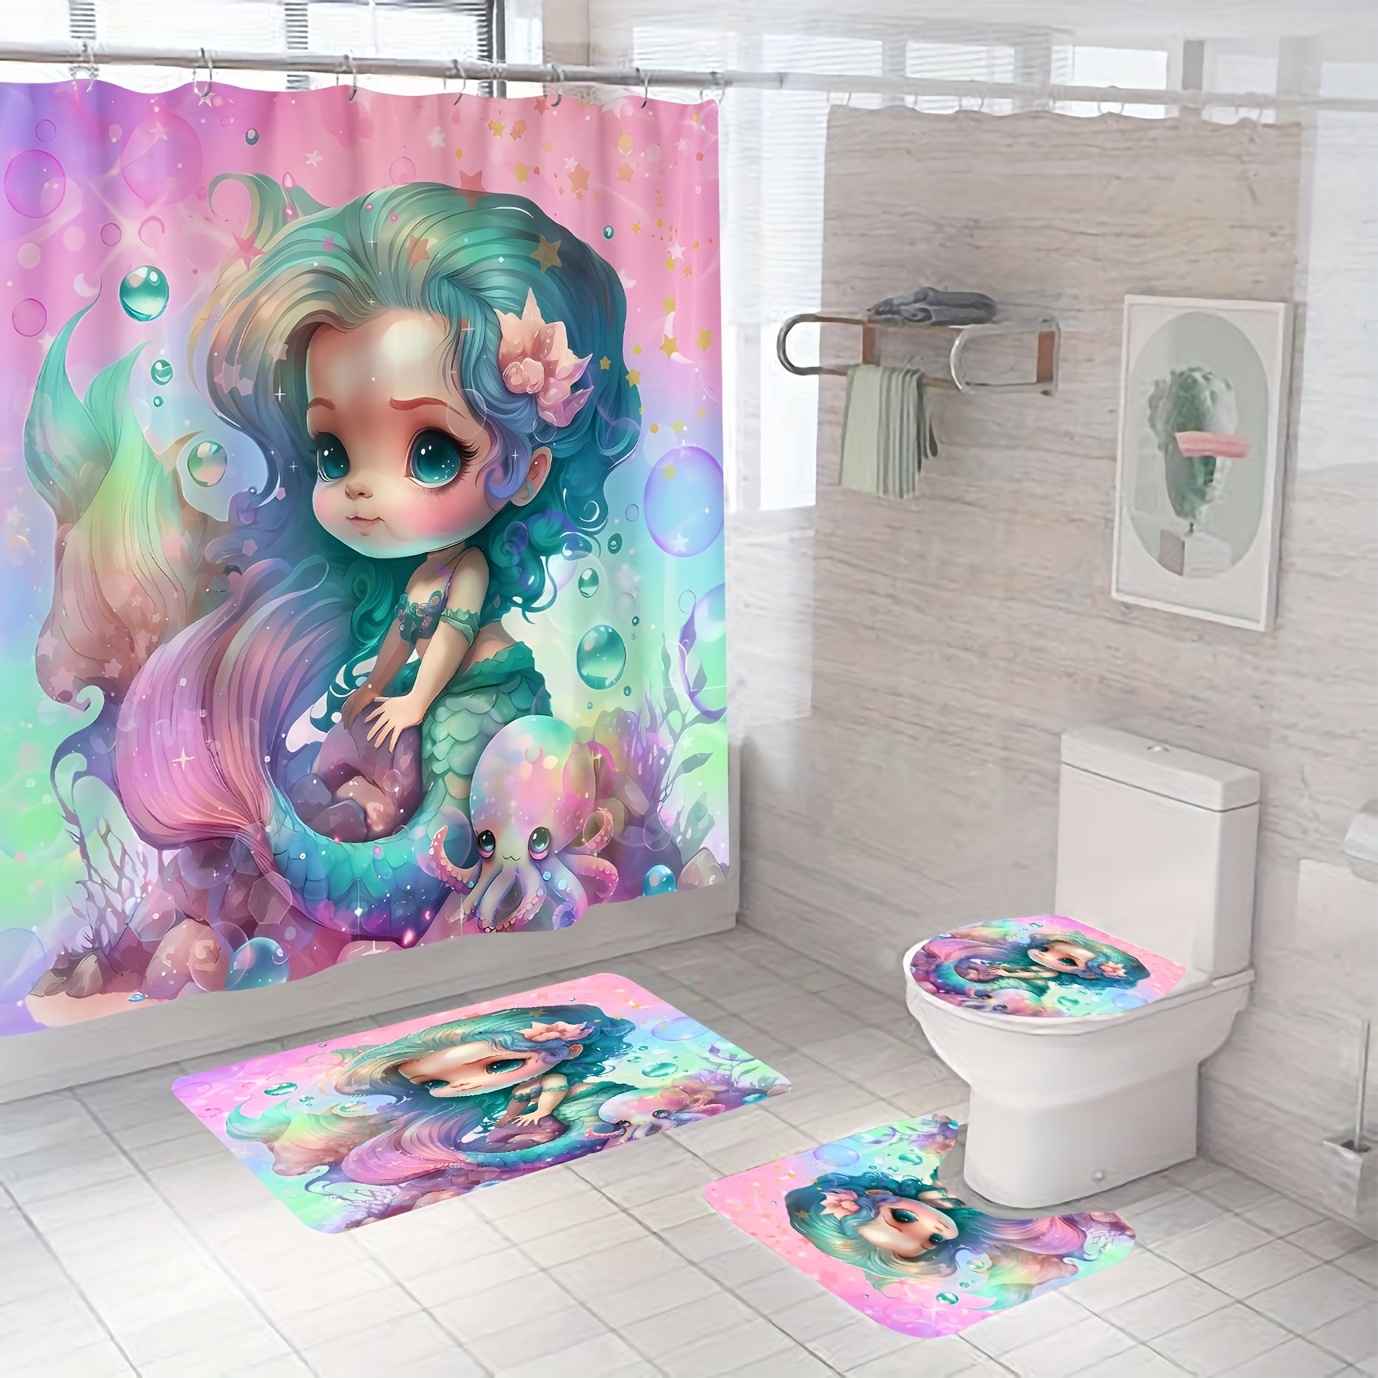 Fairy Tale Ocean World Dolphin Fish Shower Curtain Sets For Bathroom Decor